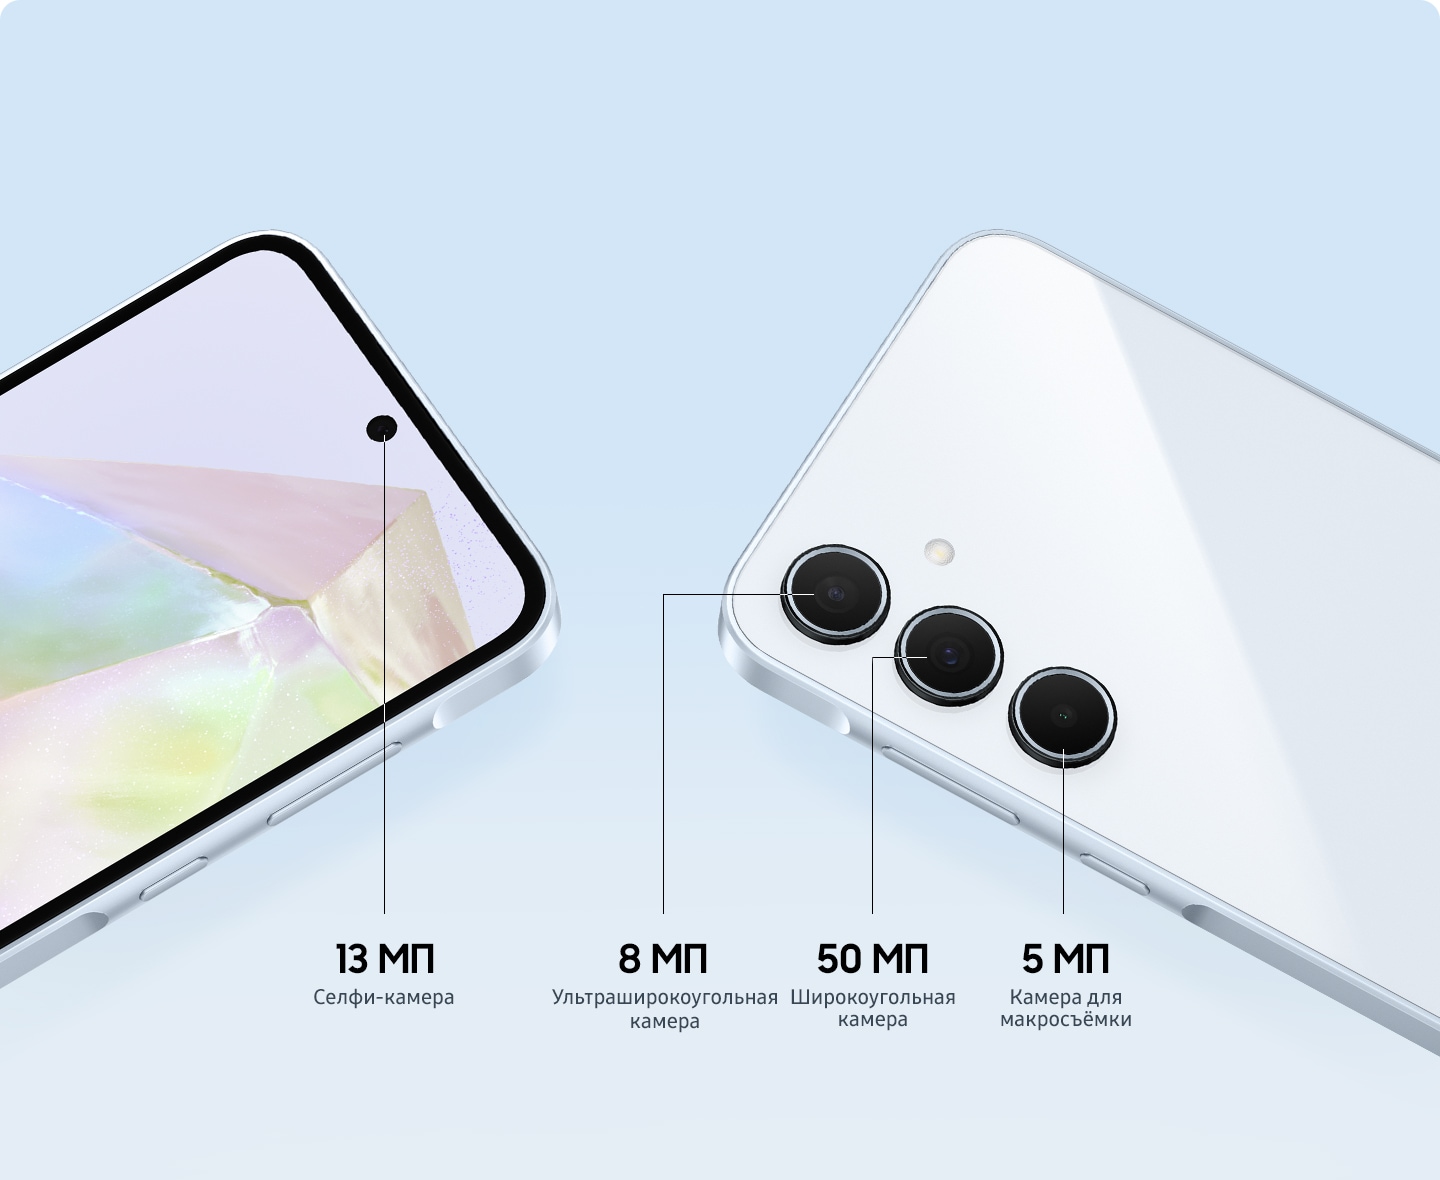 Изображение крупным планом верхней части двух смартфонов, чтобы показать 13 МП фронтальную селфи-камеру, 8 МП ультраширокоугольную камеру, 50 МП широкоугольную камеру и 5 МП камеру для макросъёмки. 